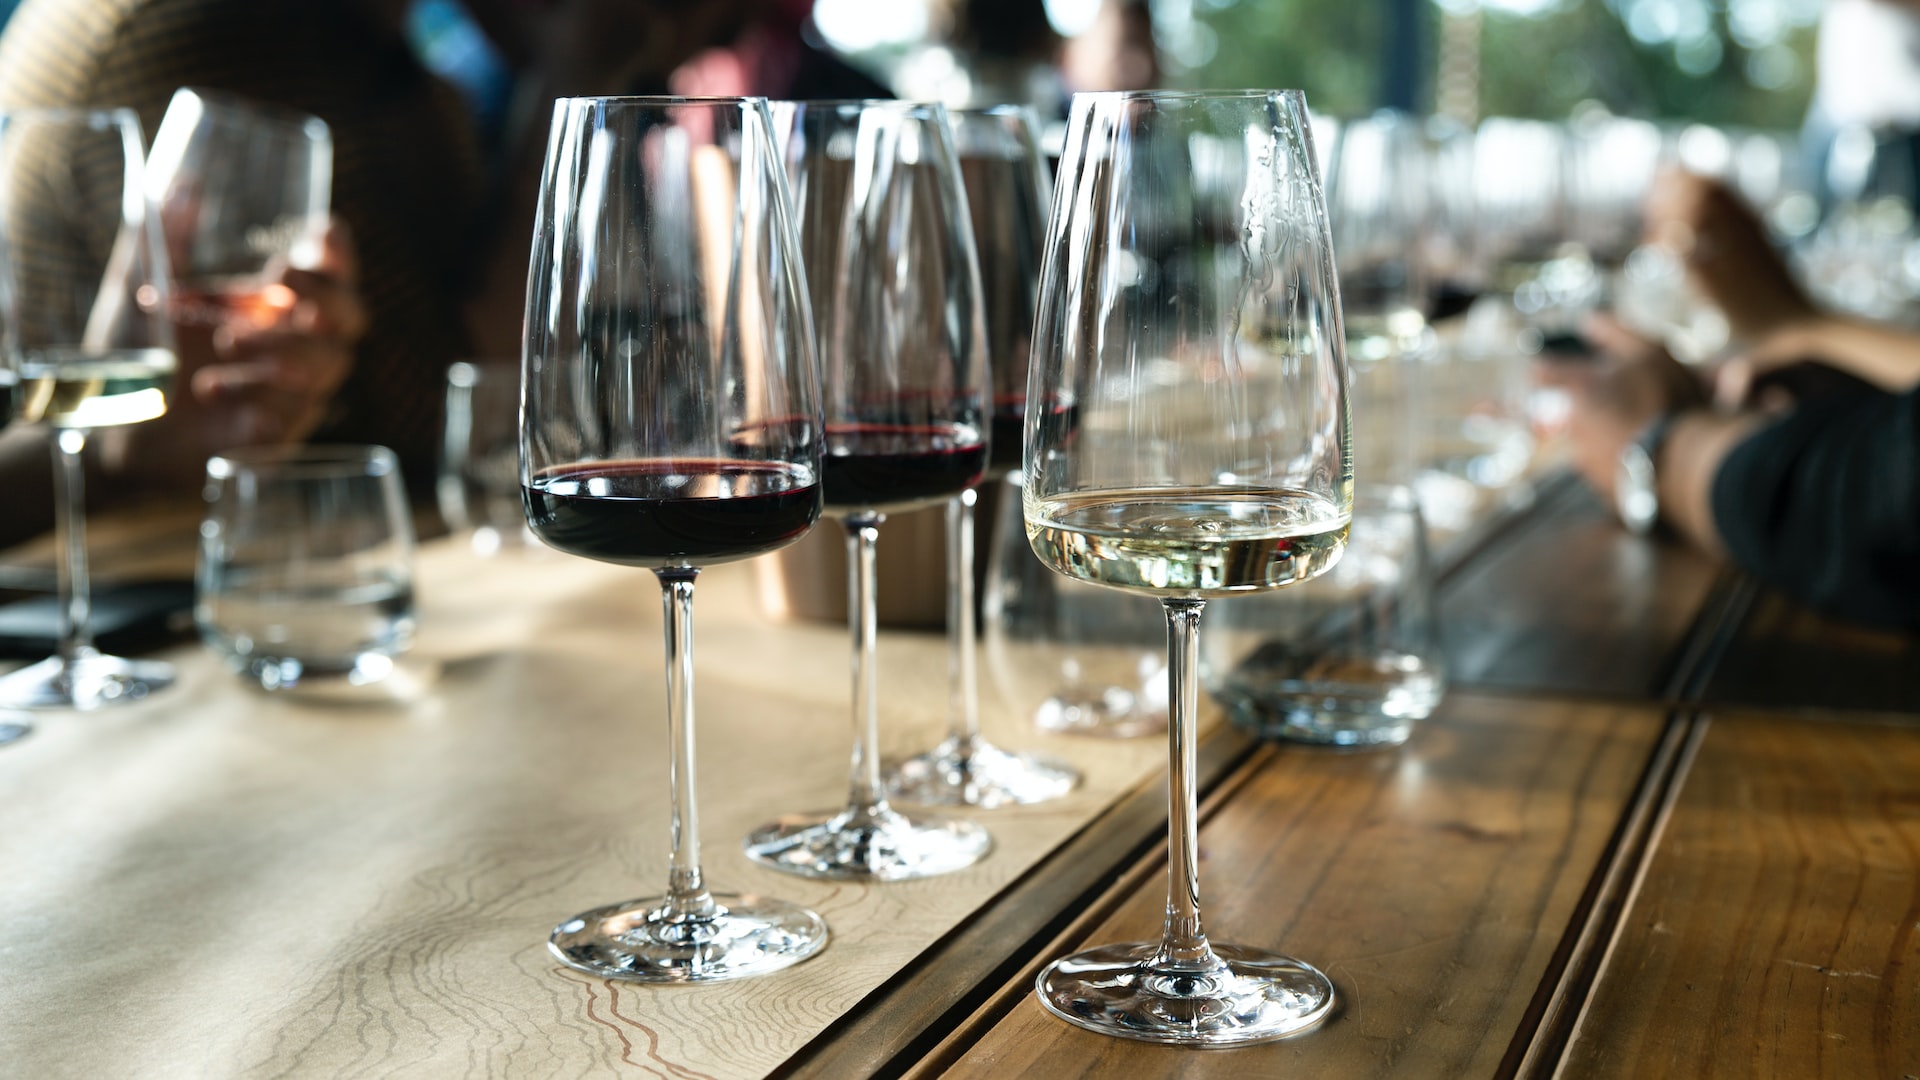 Slender wine glasses at a dinner table.